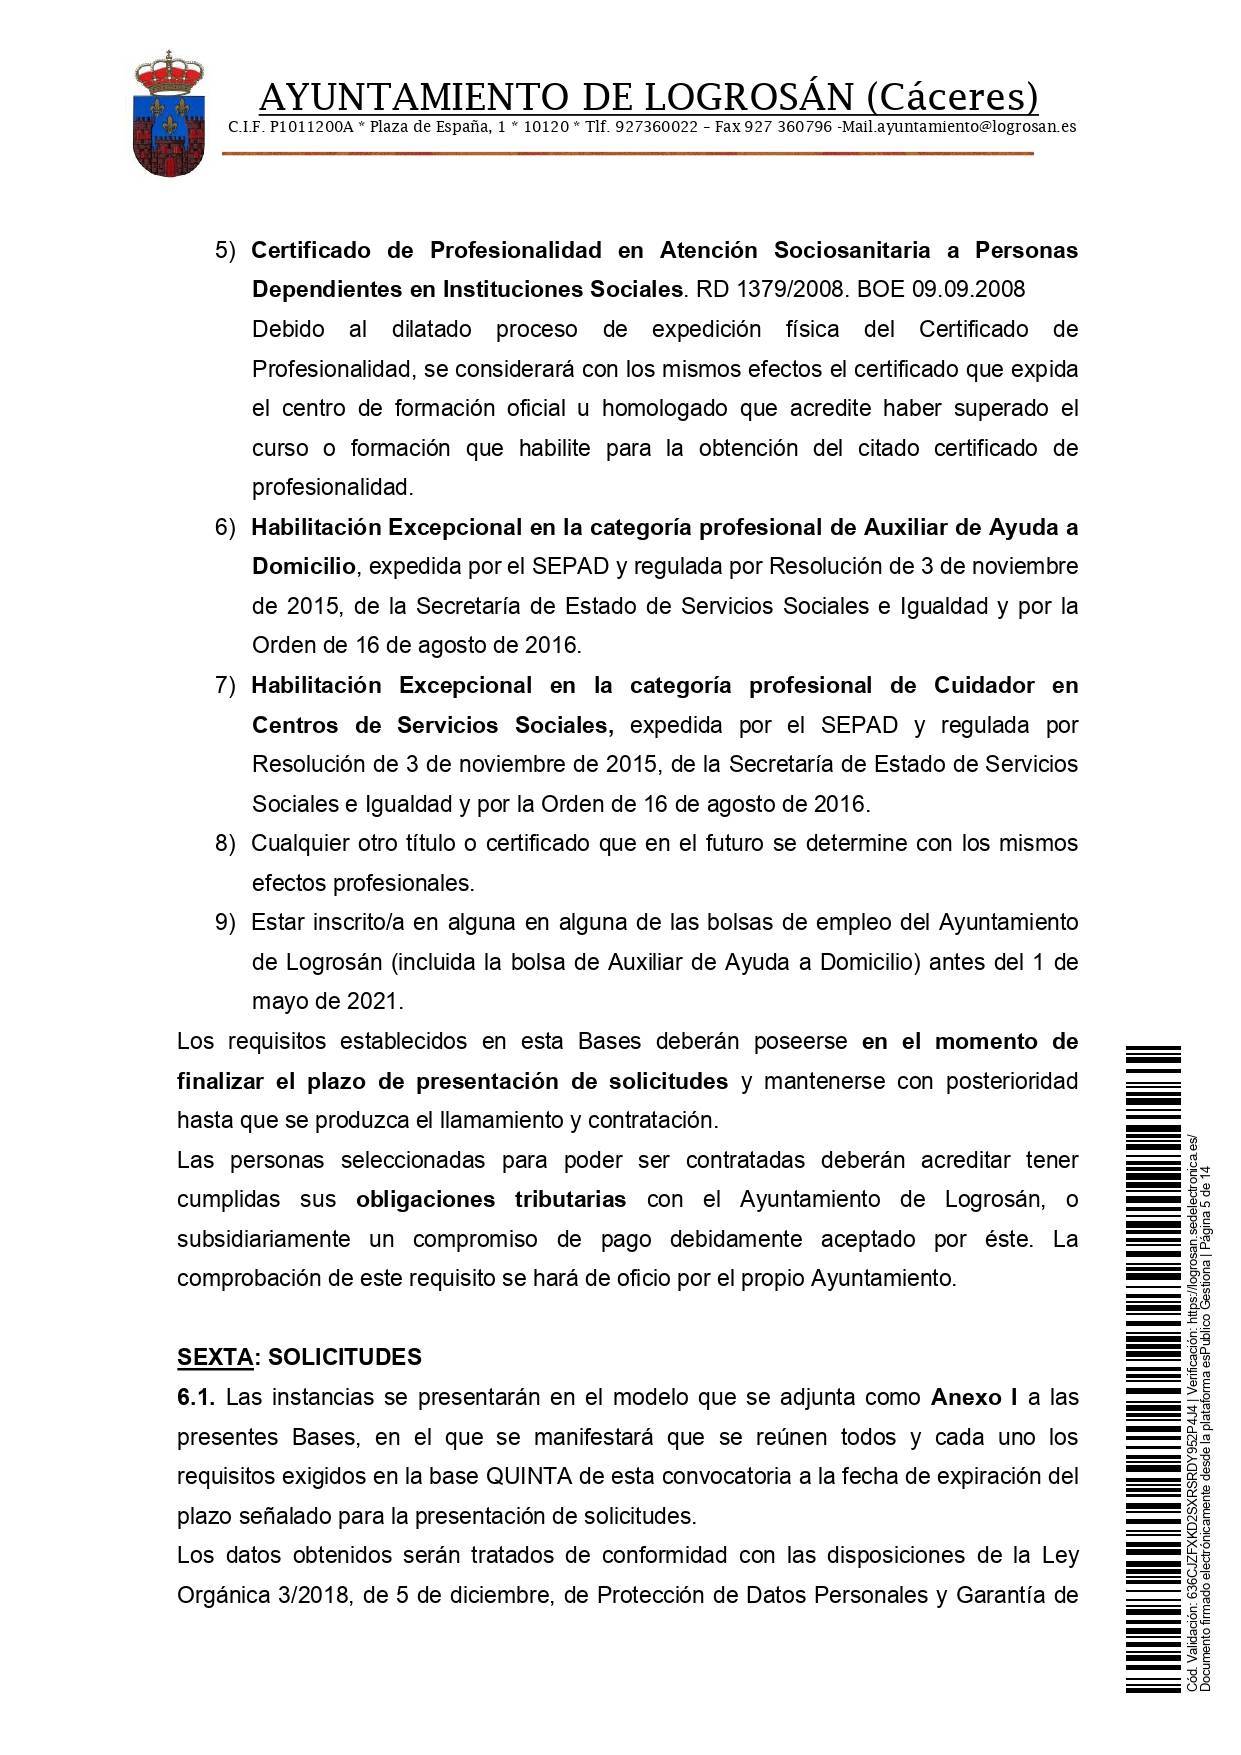 Bolsa de empleo de auxiliar de ayuda a domicilio (2021) - Logrosán (Cáceres) 5